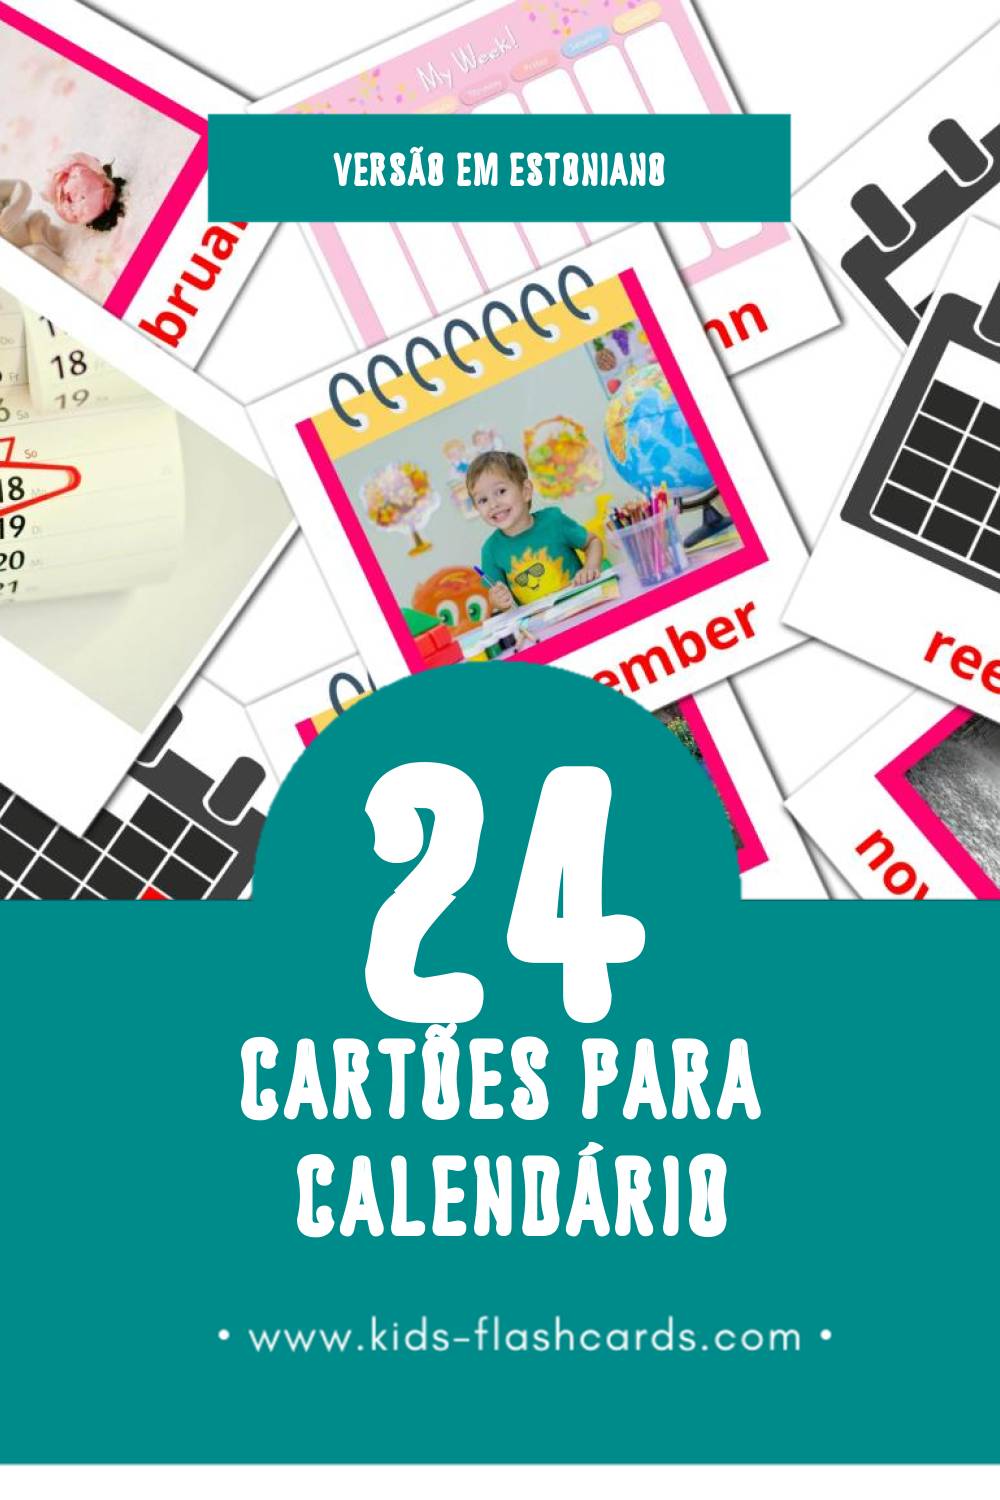 Flashcards de Kalender Visuais para Toddlers (24 cartões em Estoniano)